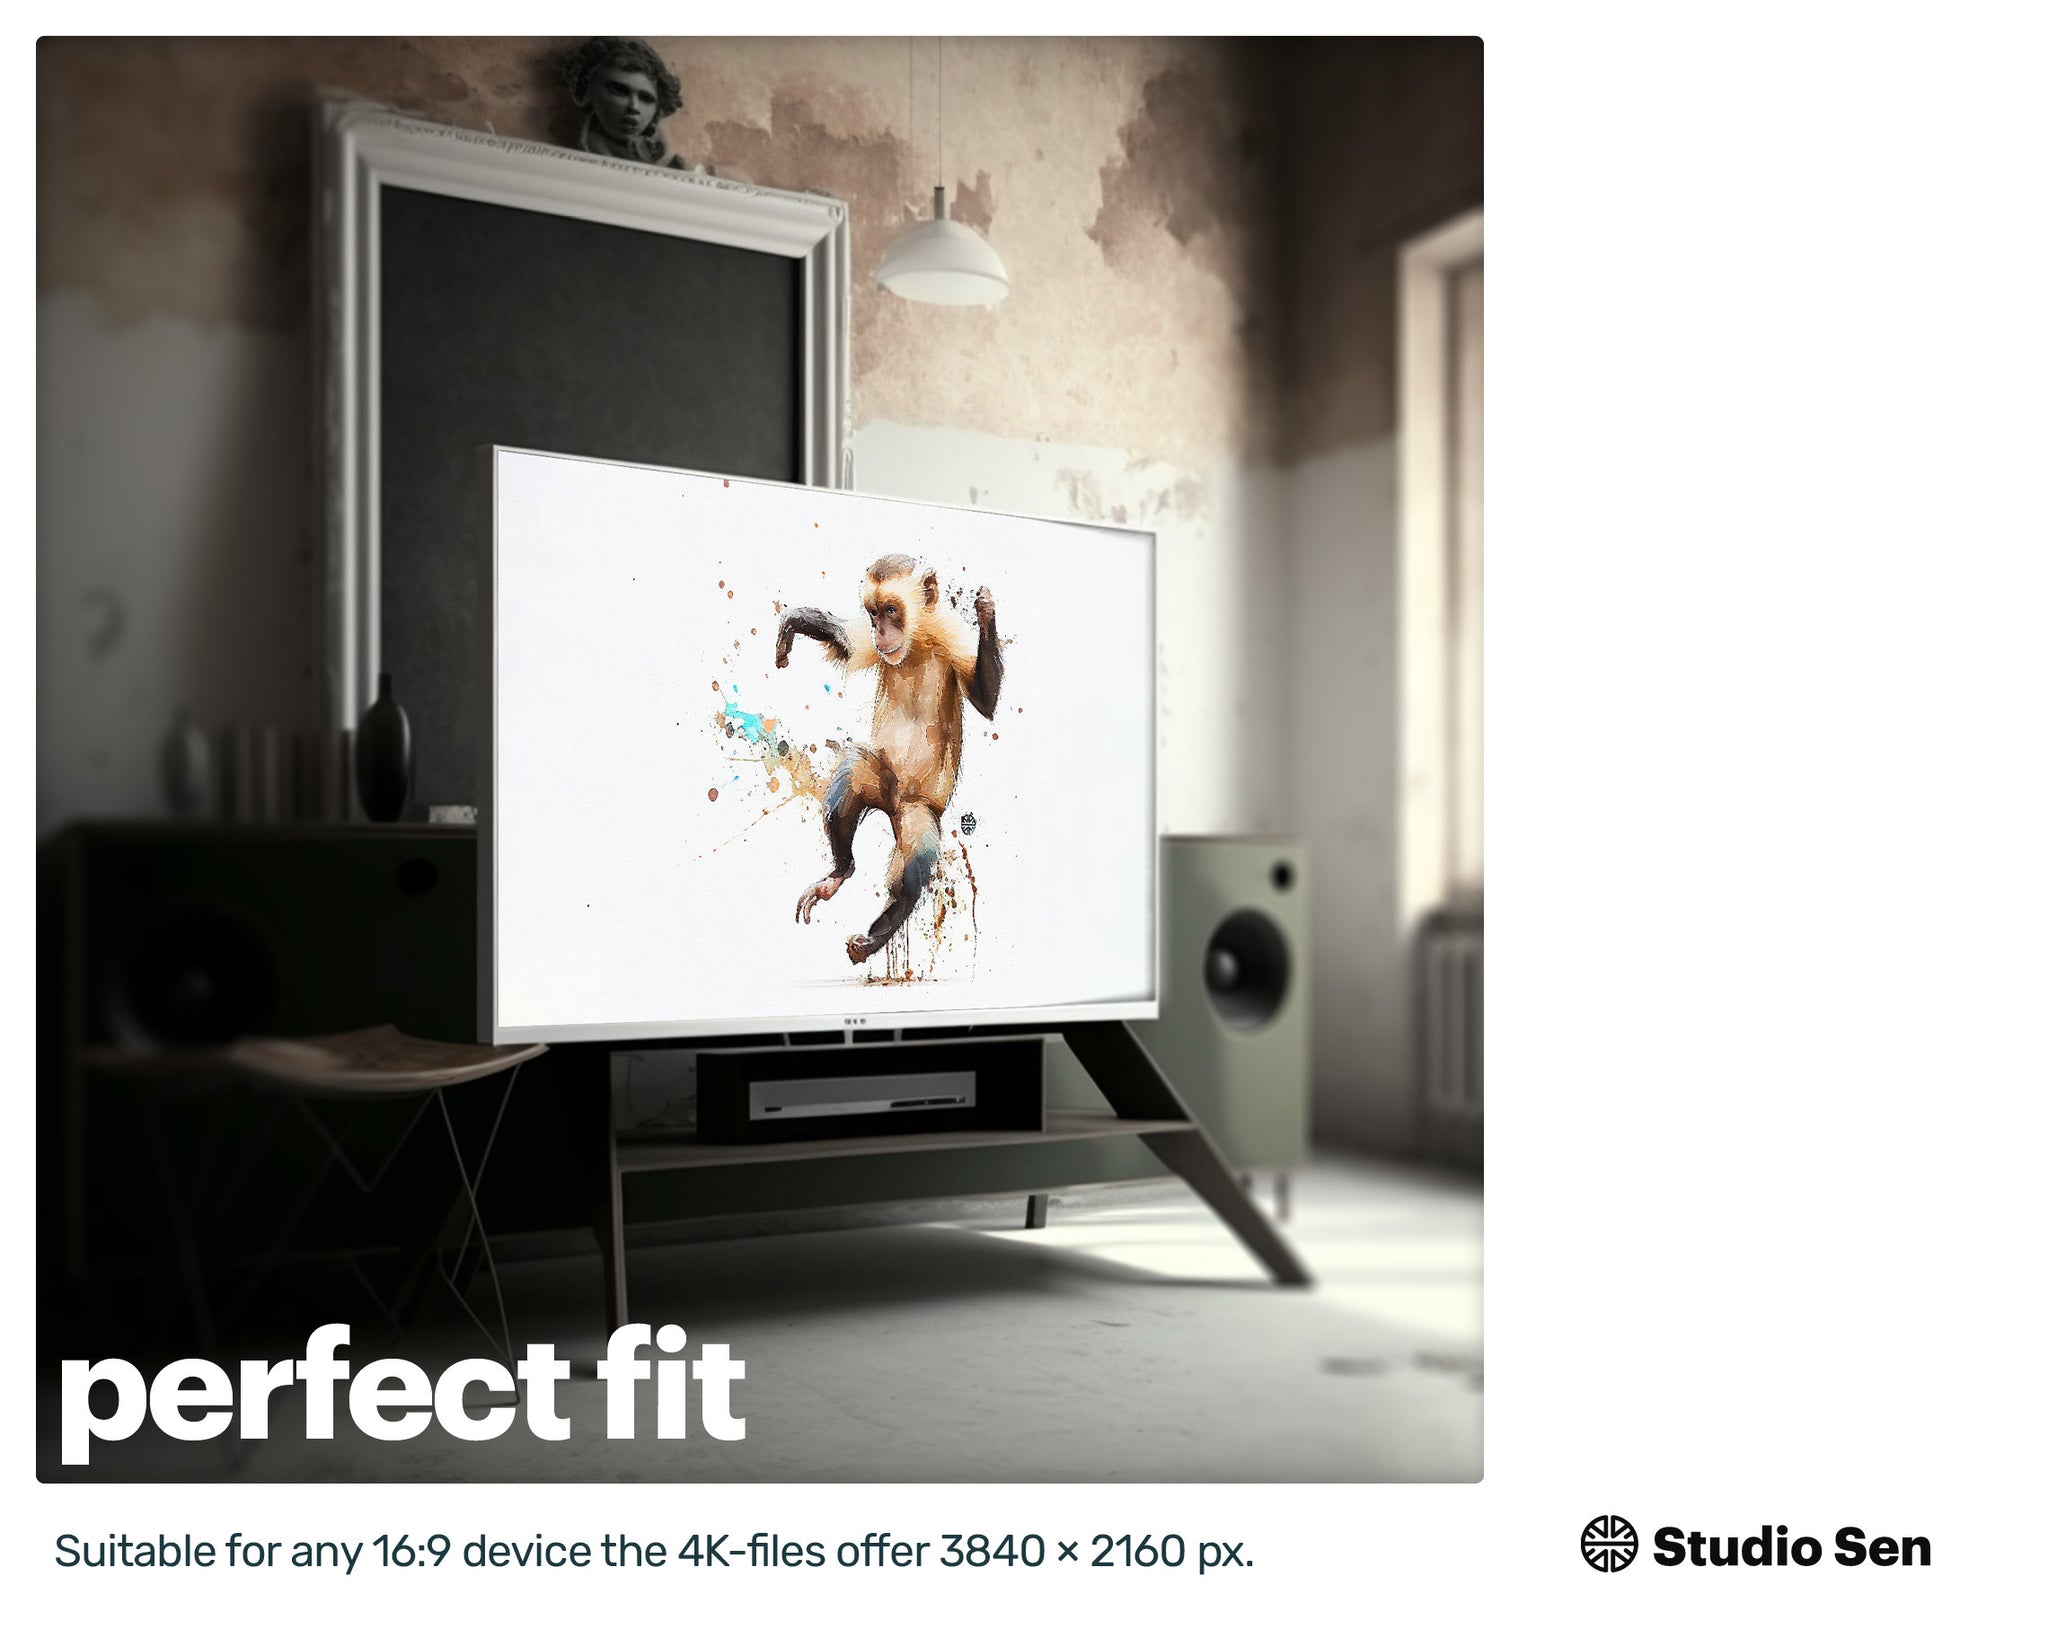 Samsung Art TV, Capuchin Monkey, premium download, drops and splashes, friendly wallpaper, art for kids